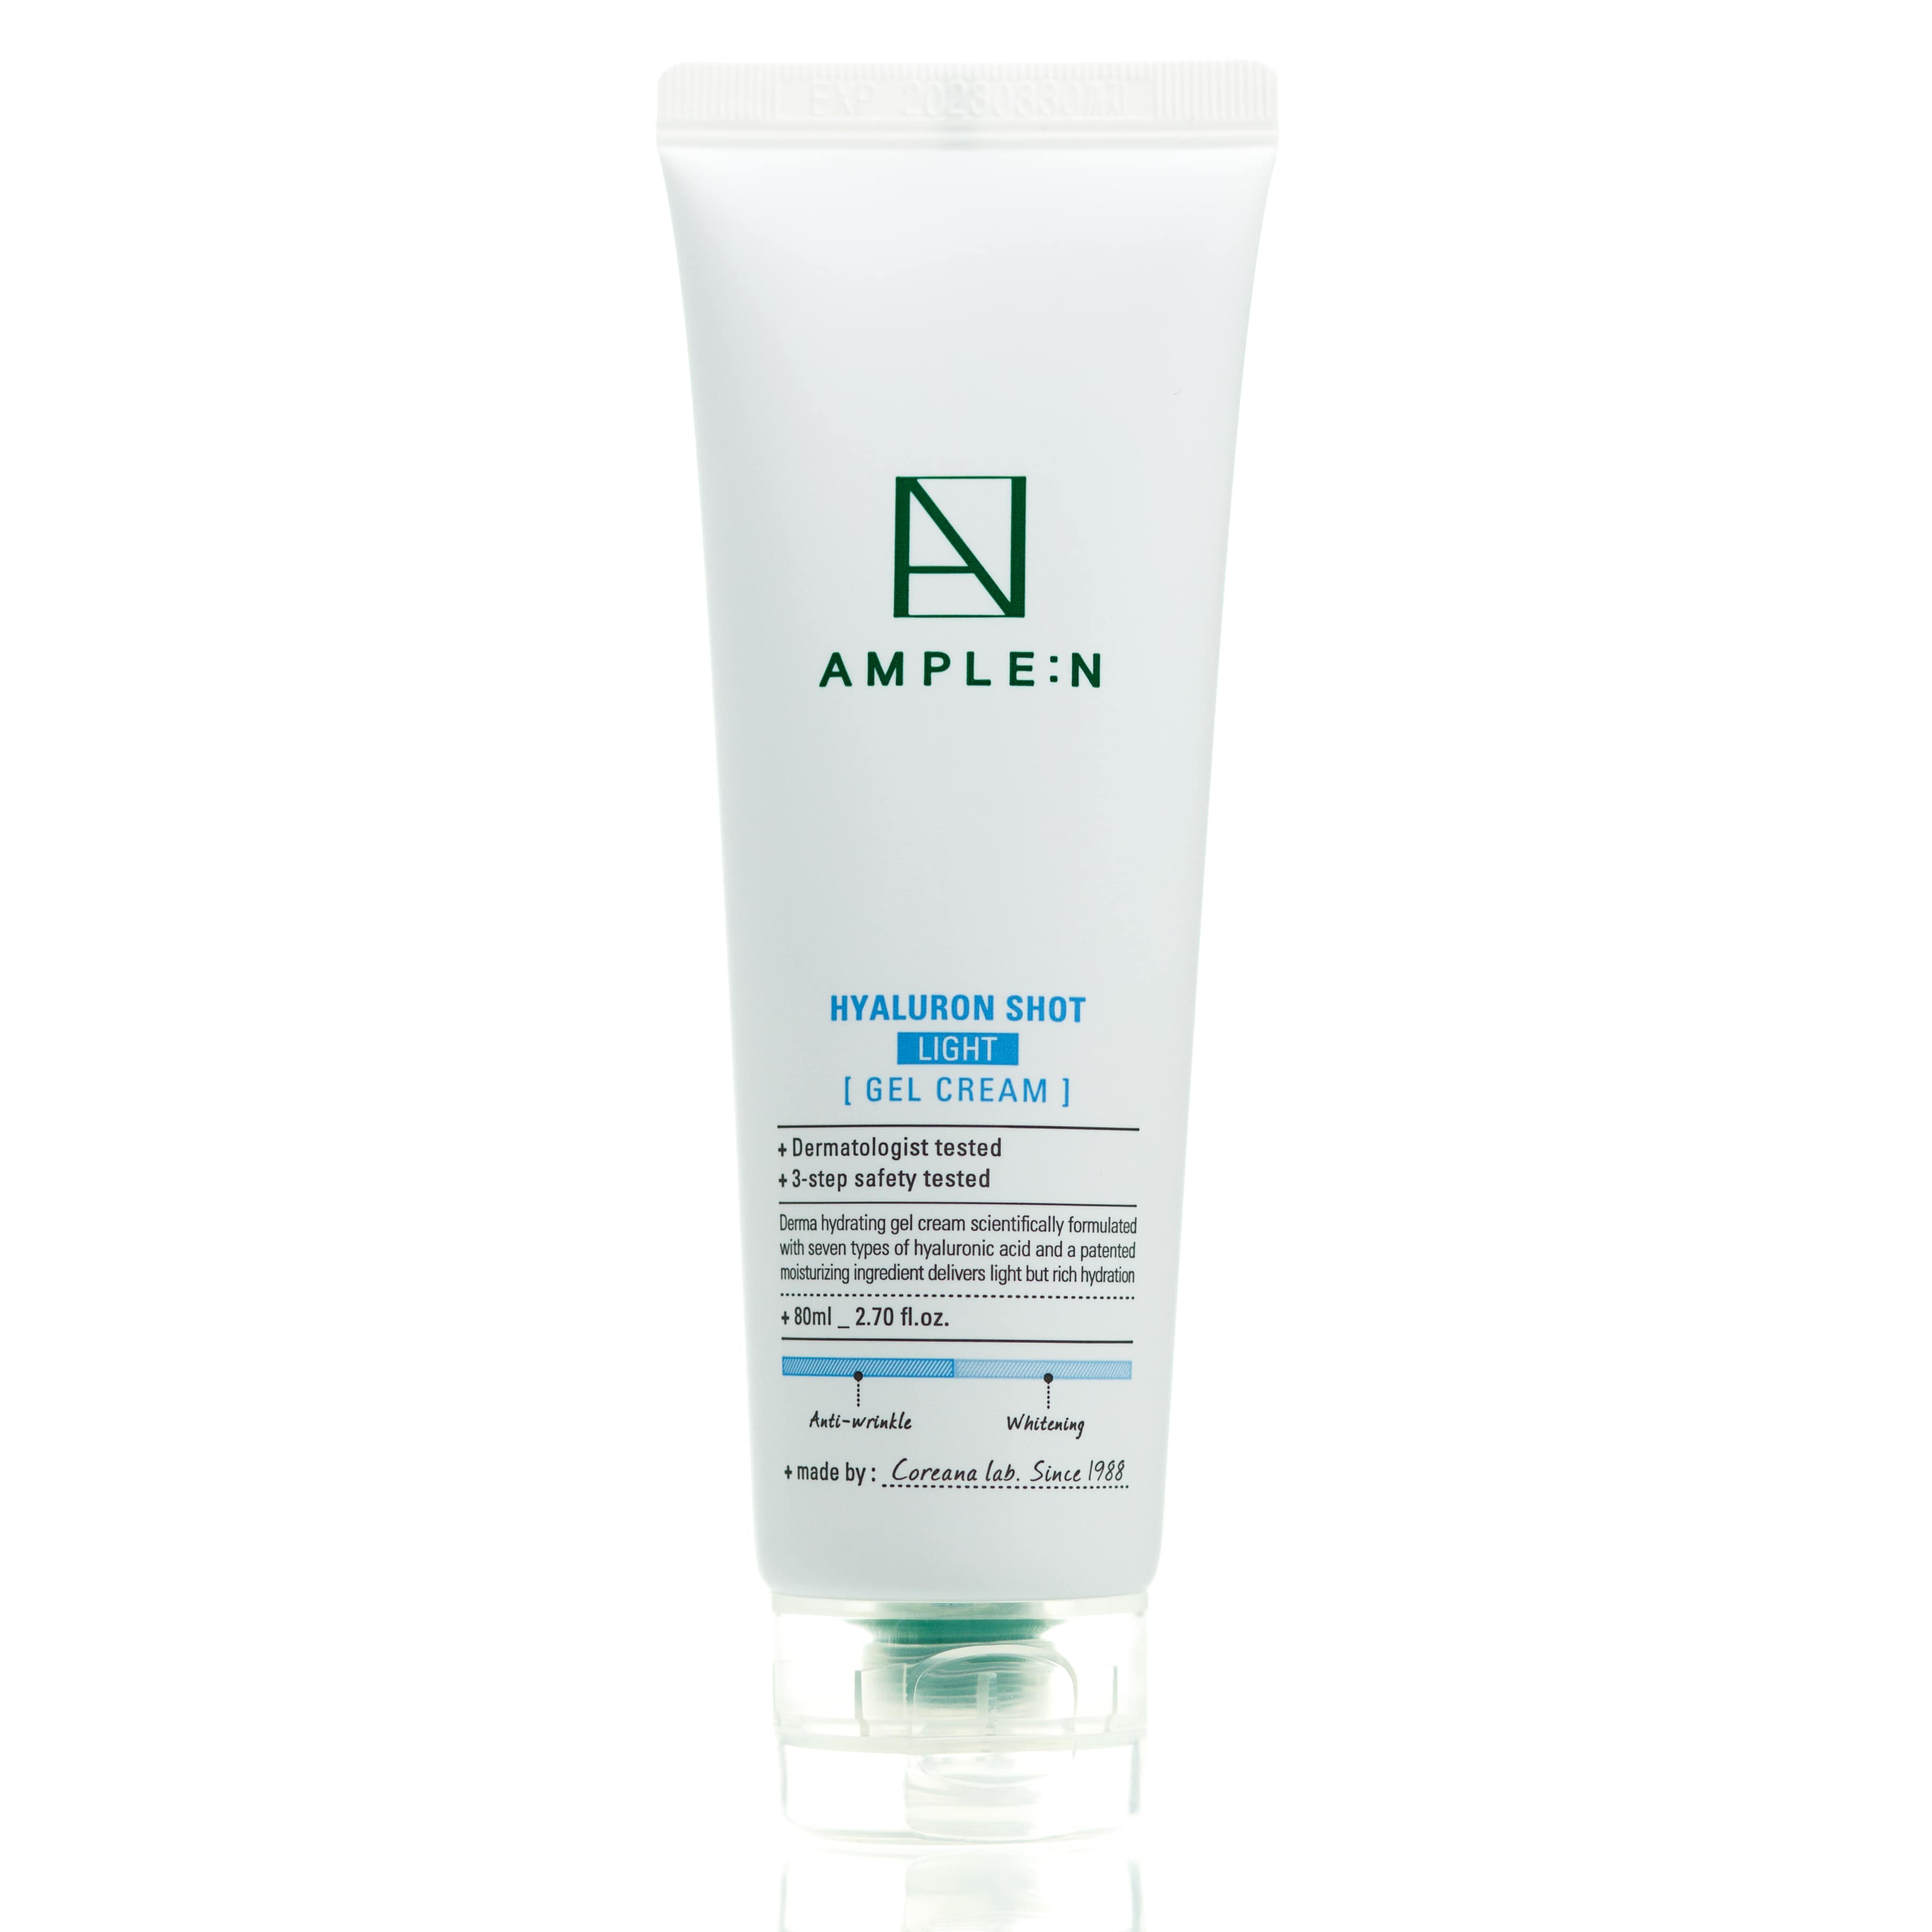 AMPLE:N Hyaluron Shot Light Gel Cream 30ml*5Pcs – LIPTAIL